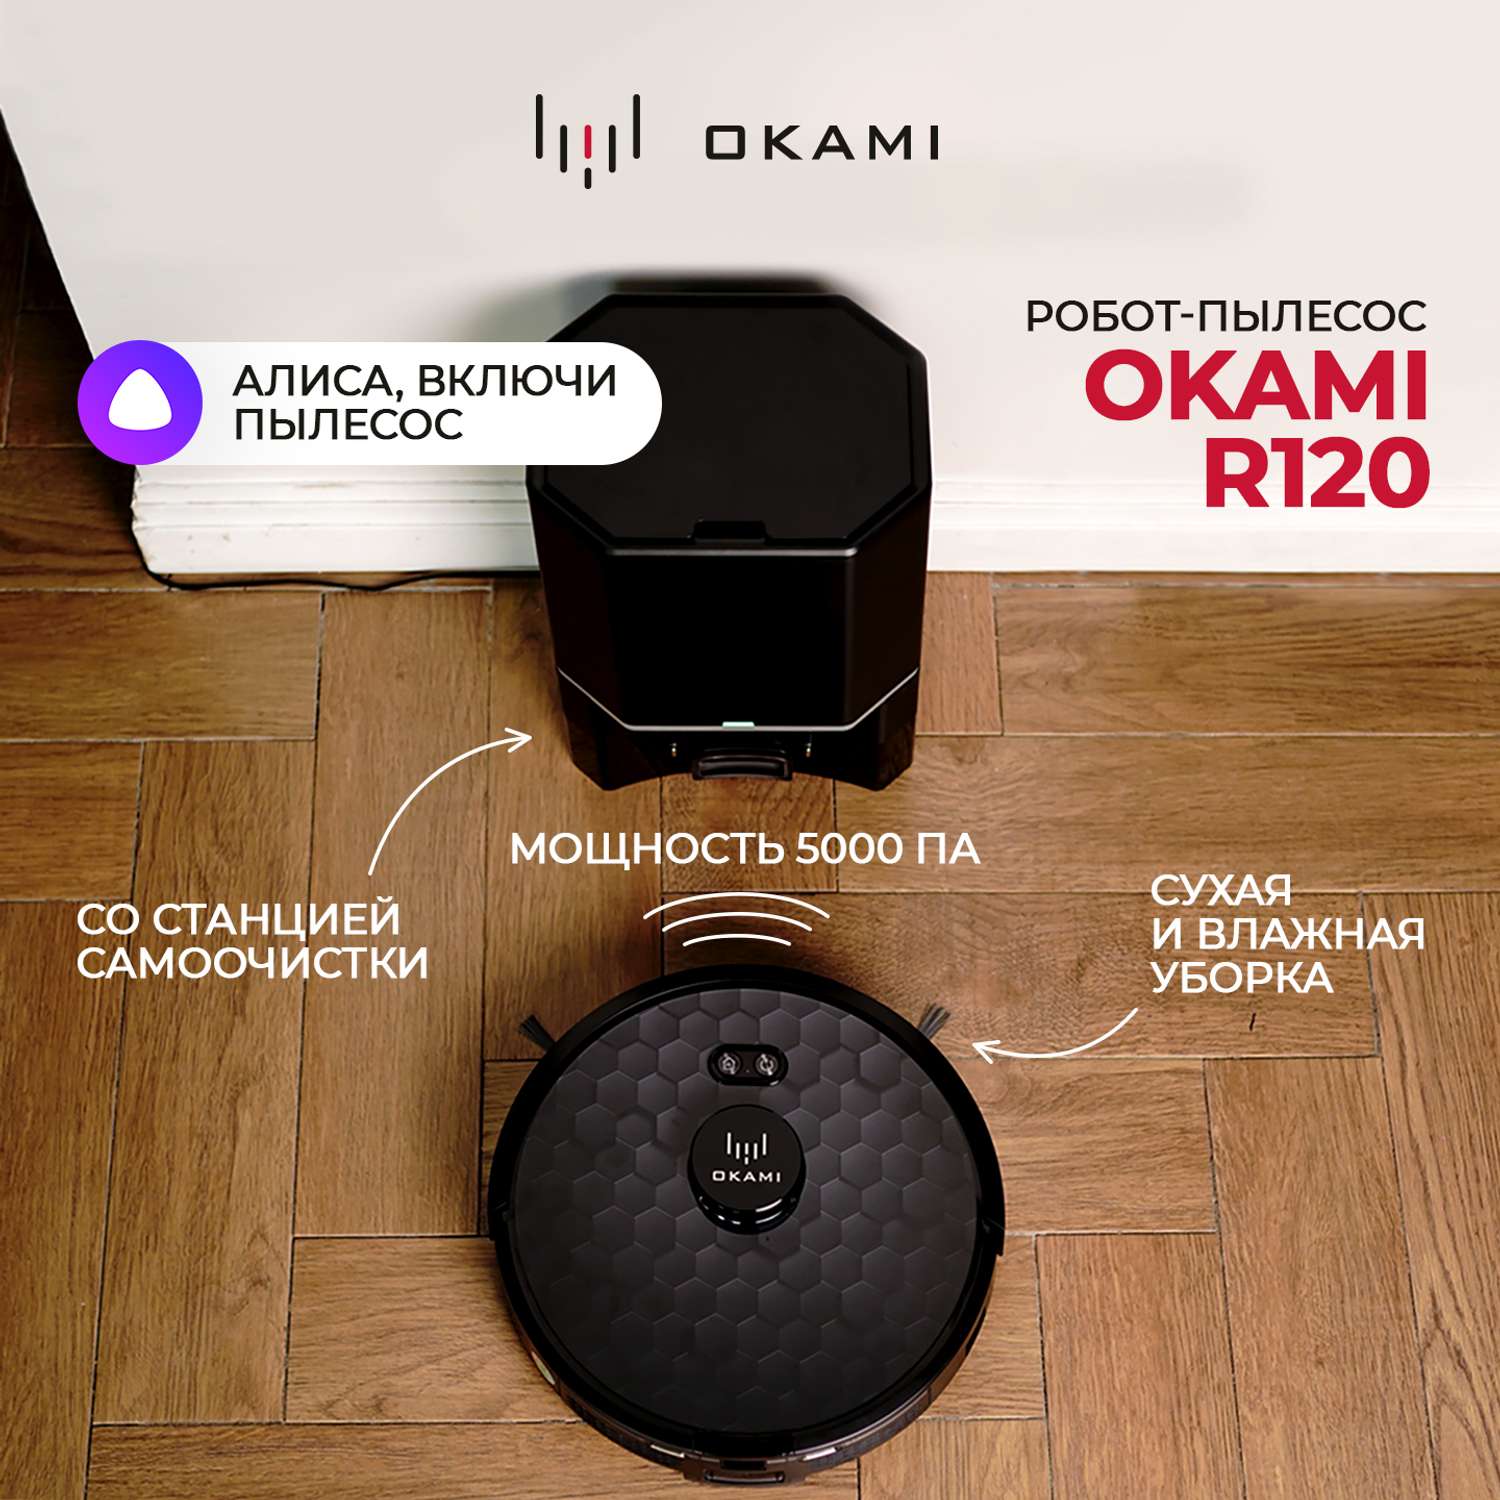 Робот-пылесос Okami R120 цвет черный - фото 1